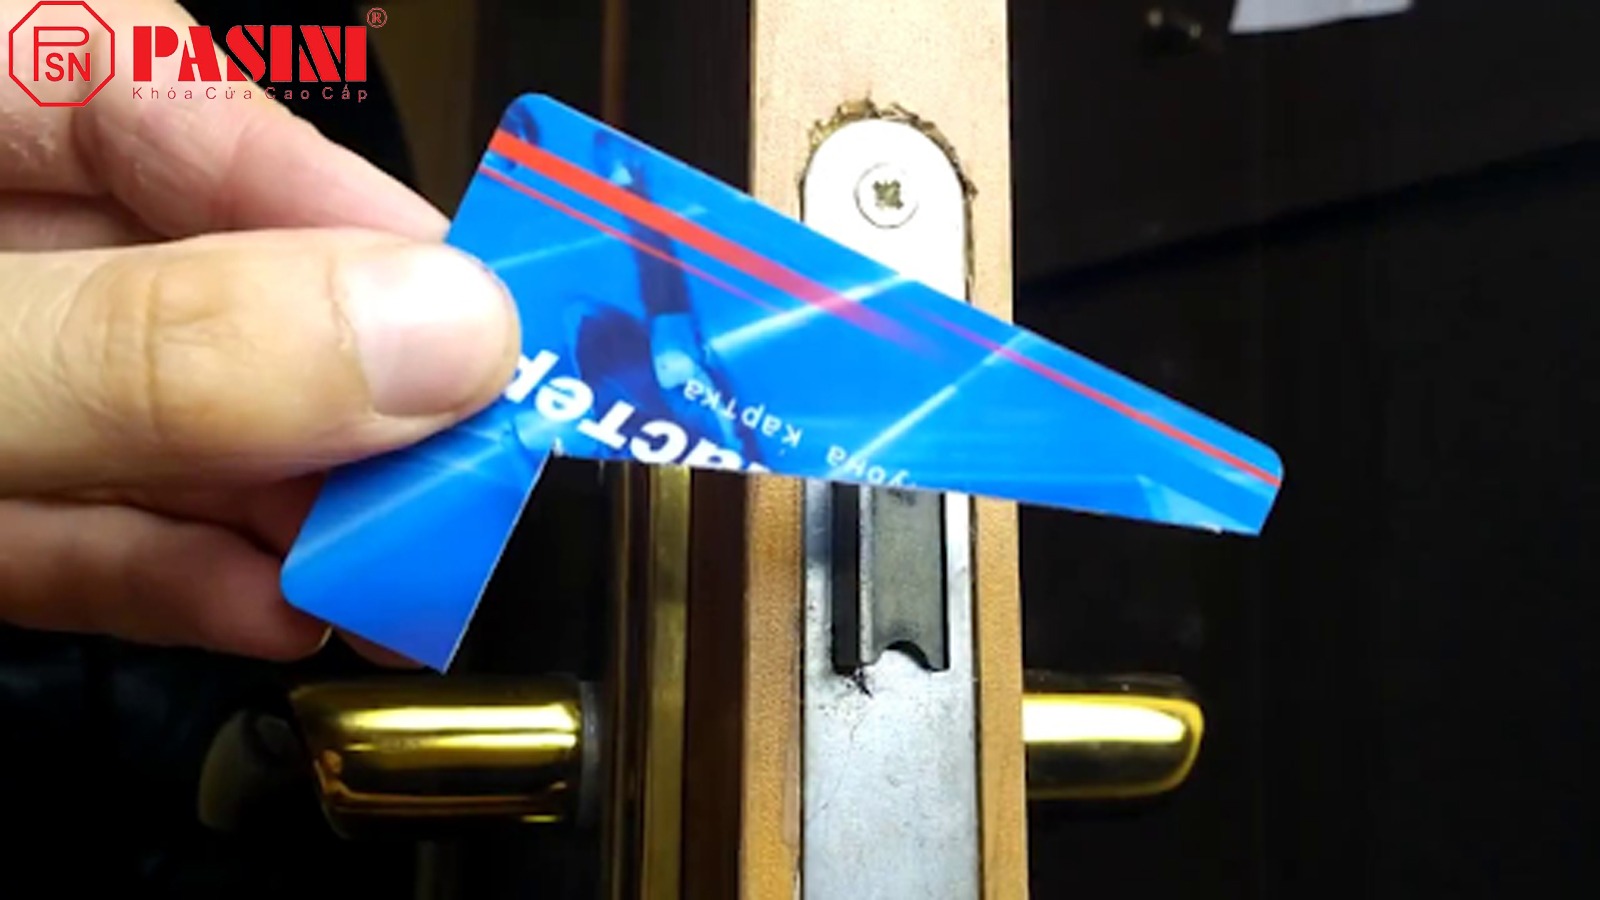 Cách mở khóa cửa tay gạt bị kẹt bằng thẻ ATM